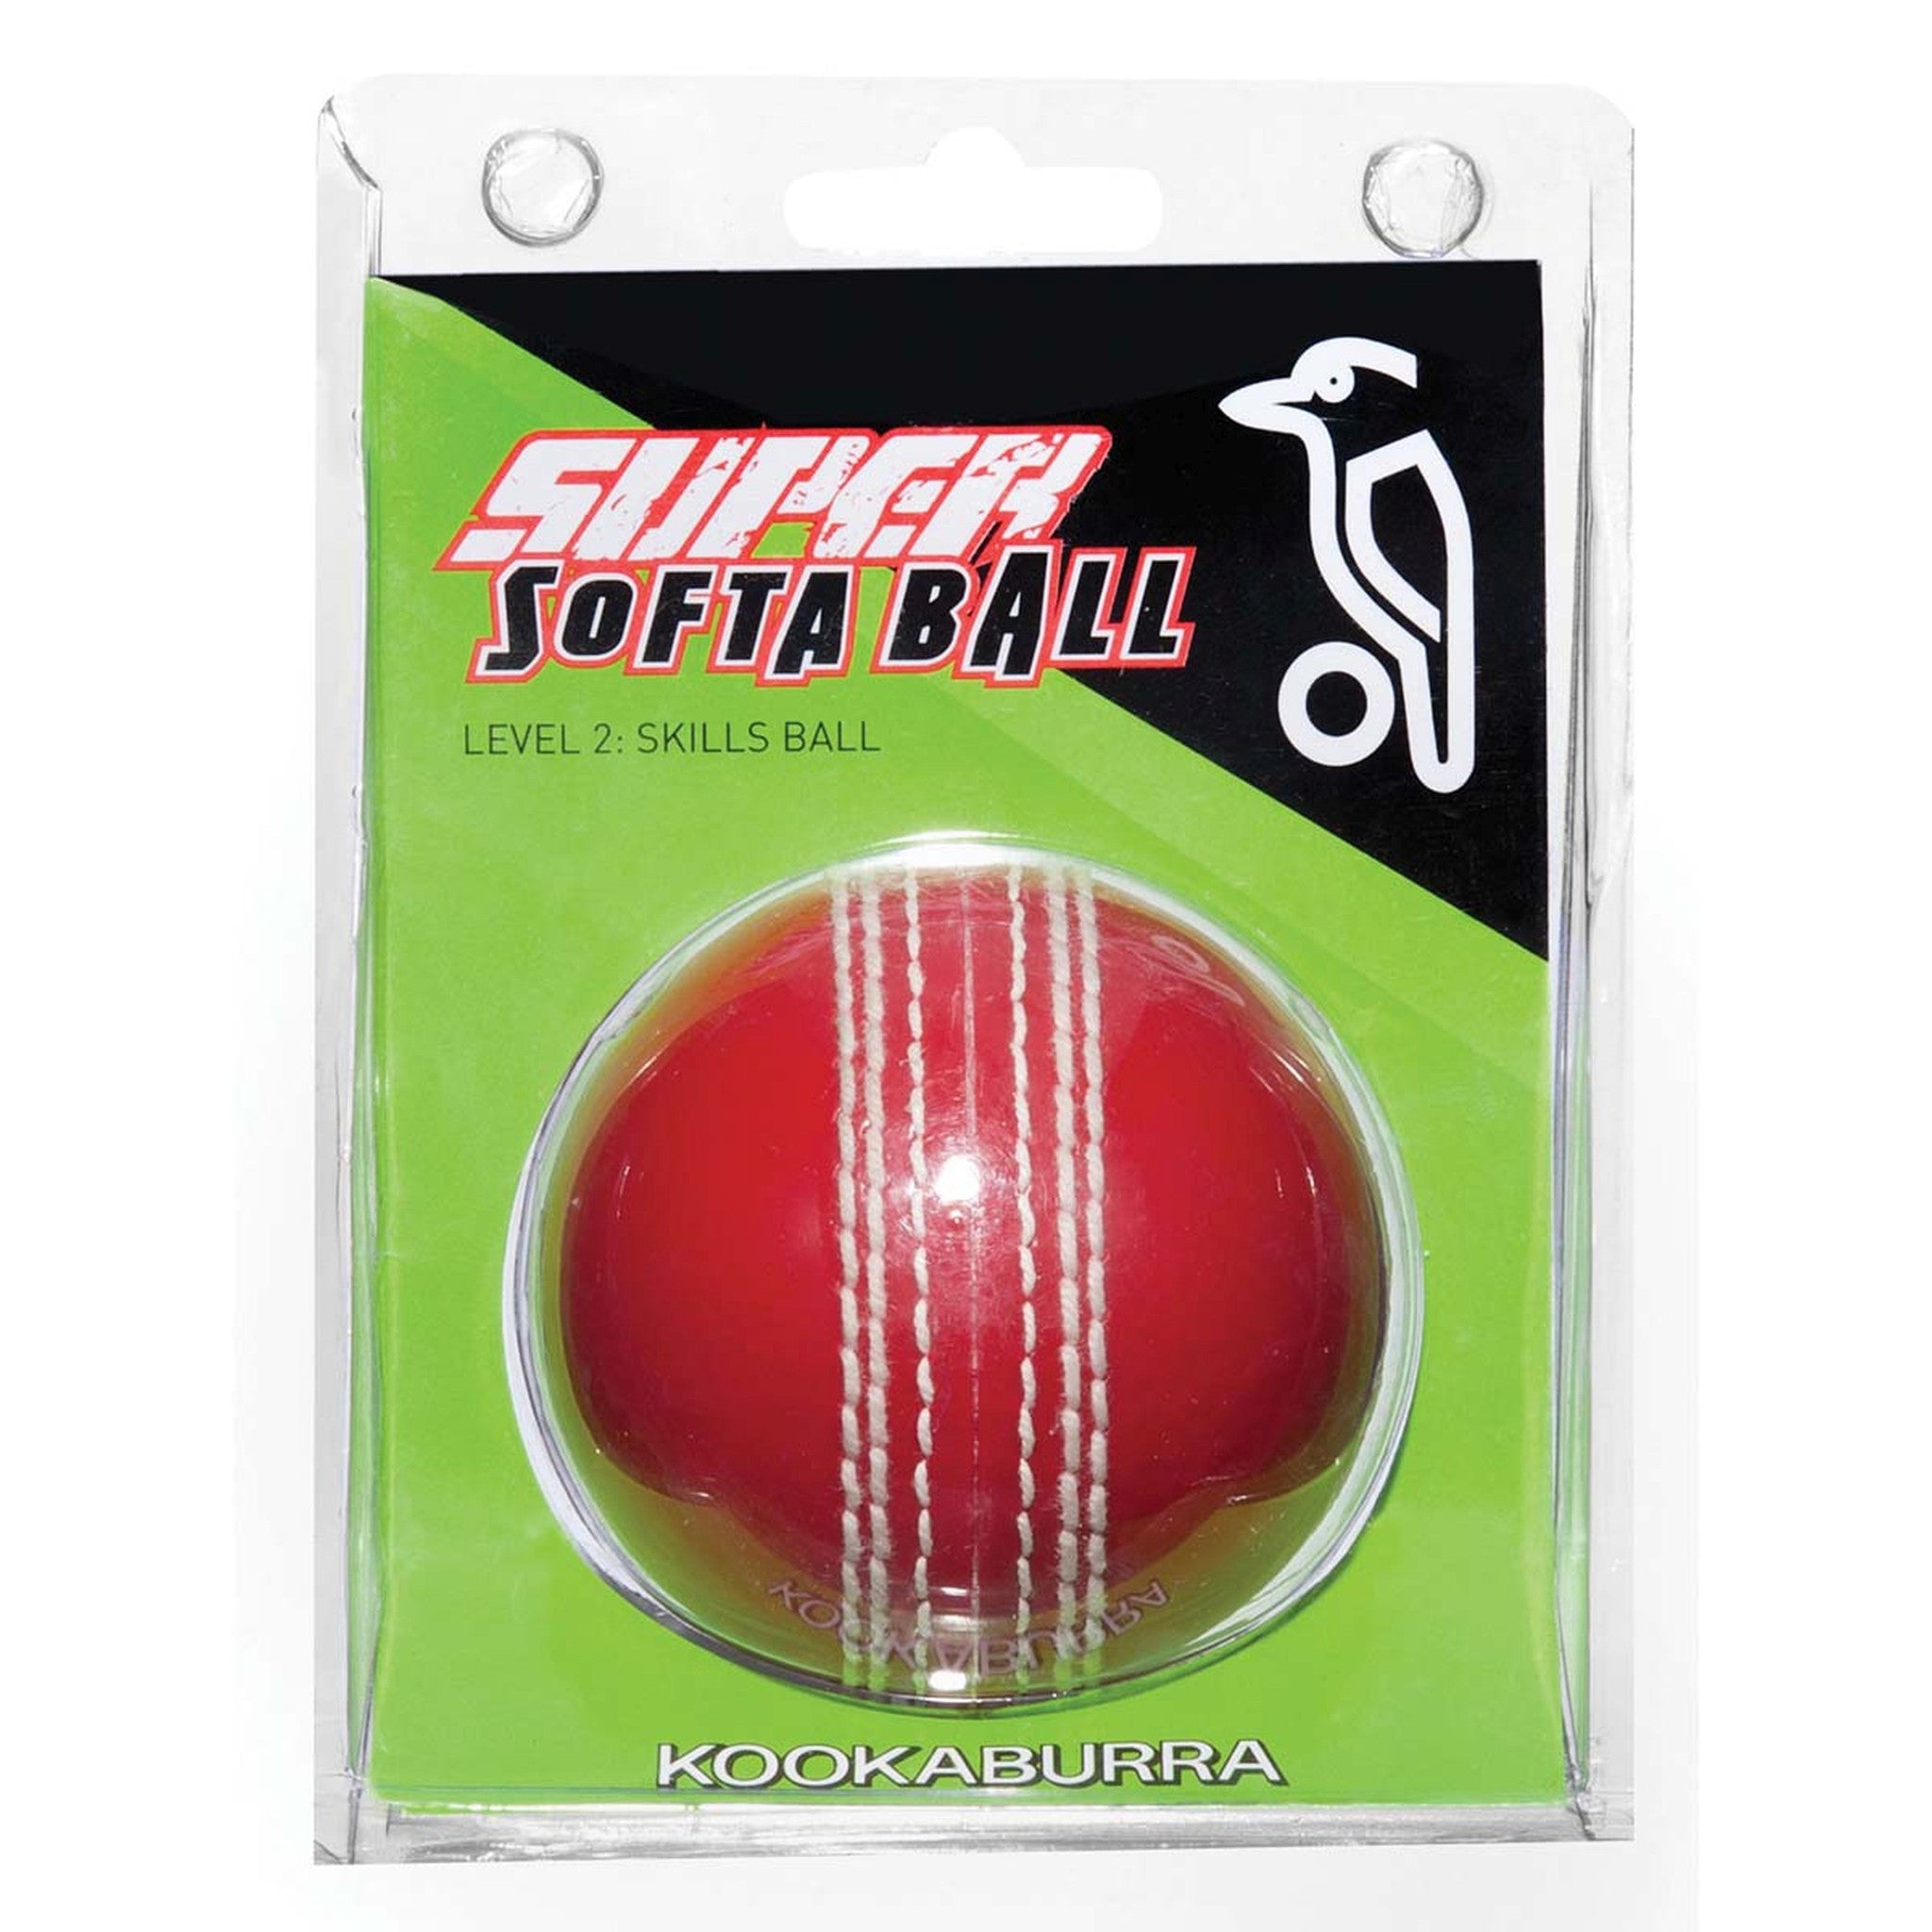 Kookaburra Cricket Super Softa Ball